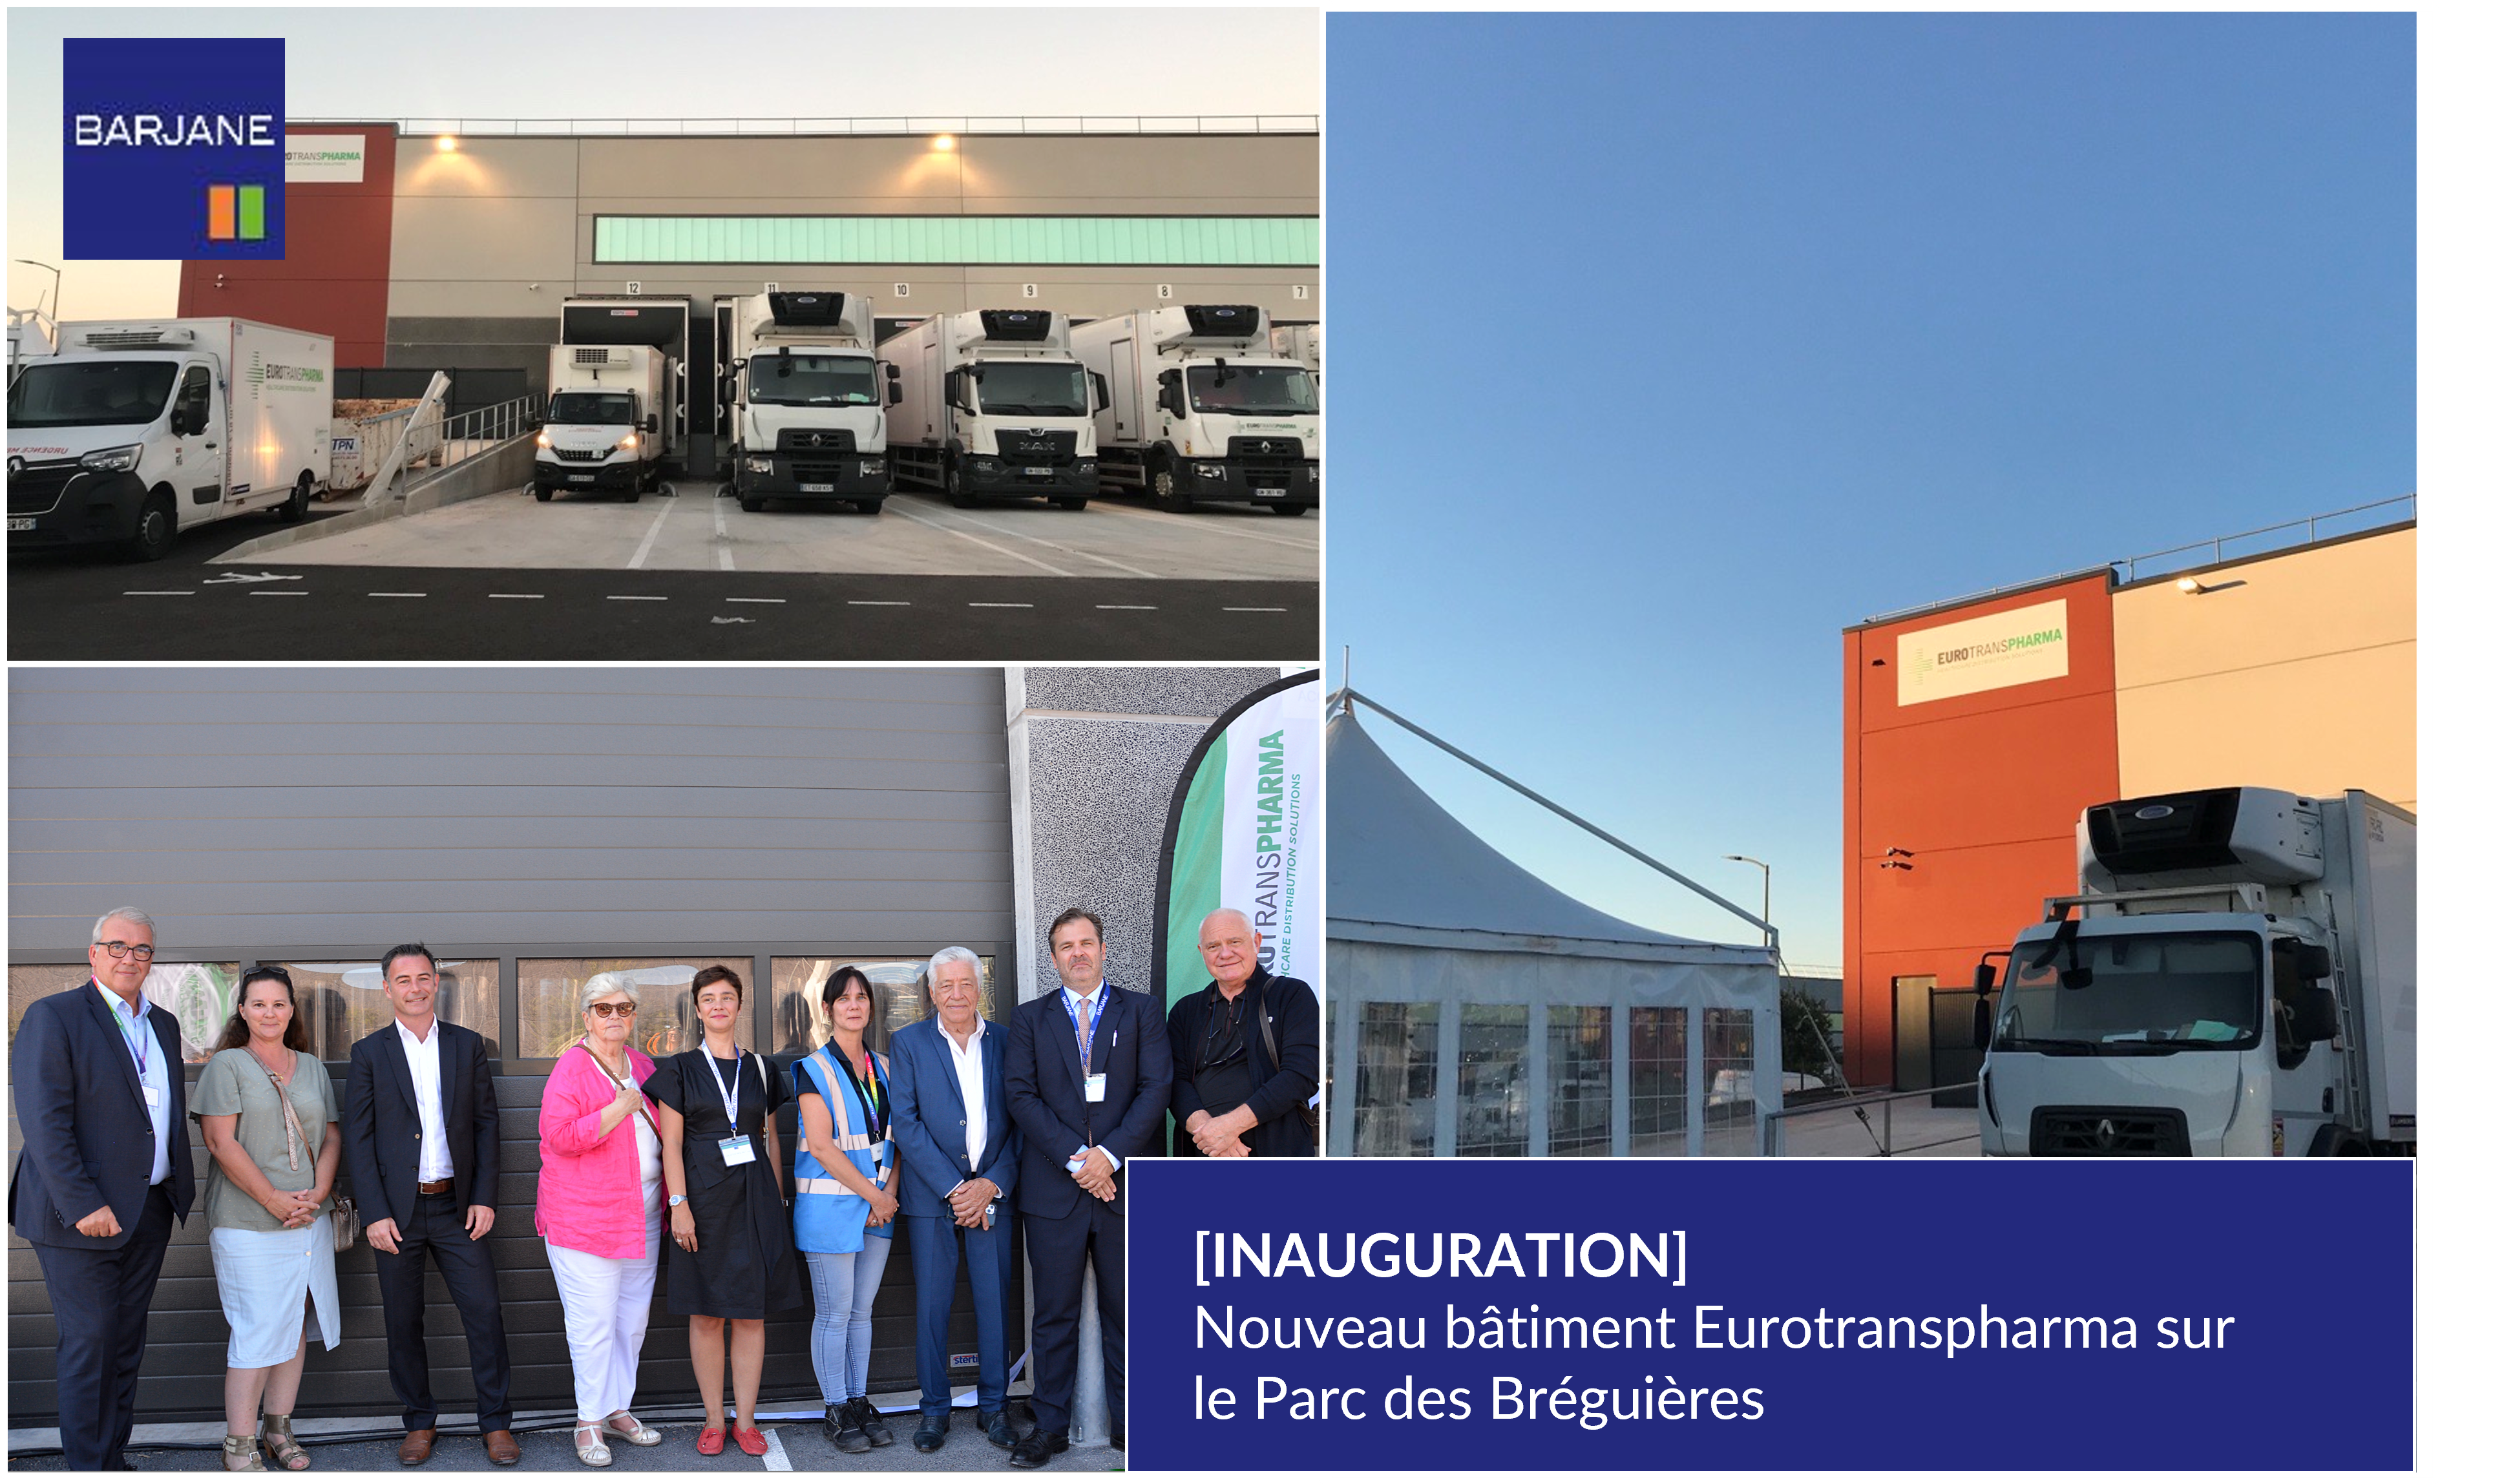 BARJANE et Eurotranspharma inaugurent un nouveau bâtiment sur le Parc des Bréguières